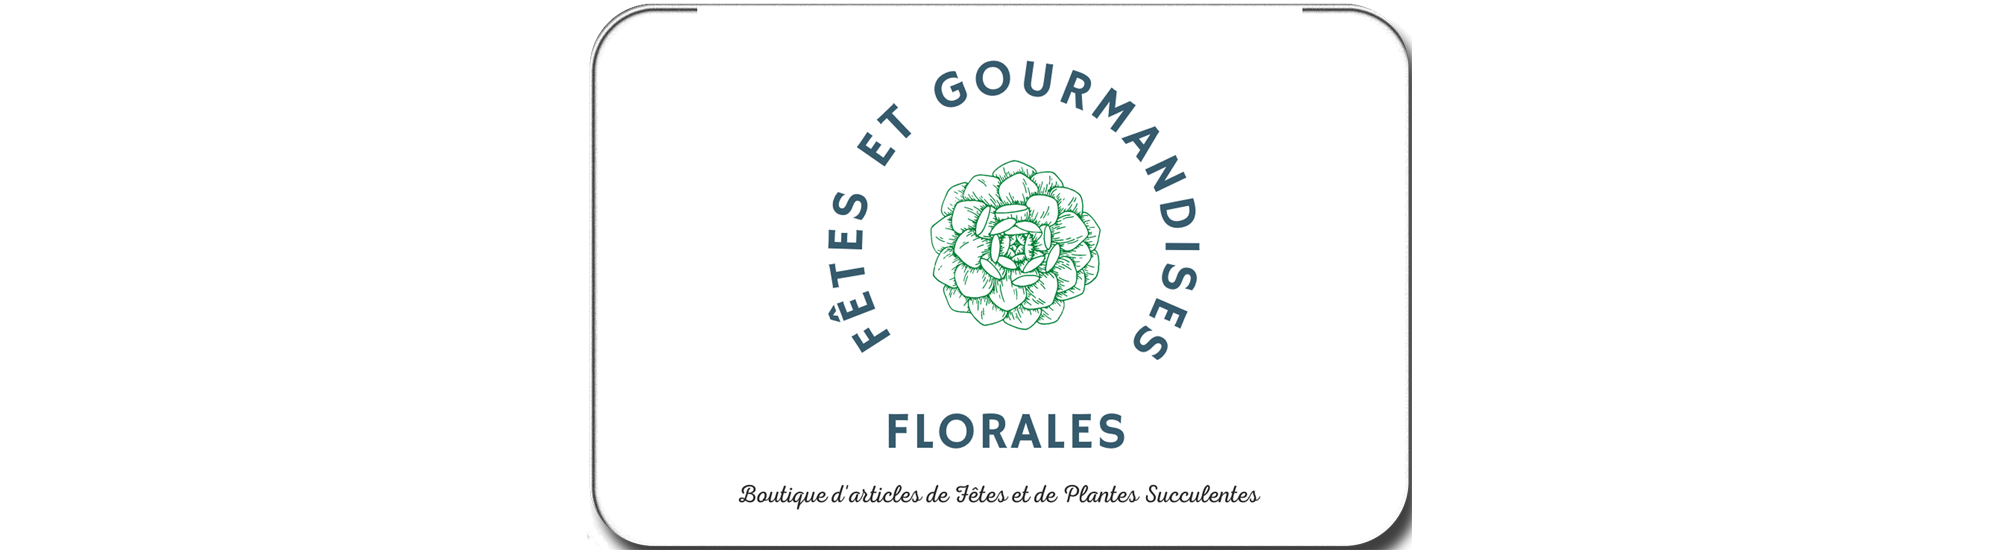 Fêtes et Gourmandises Florales Vendée